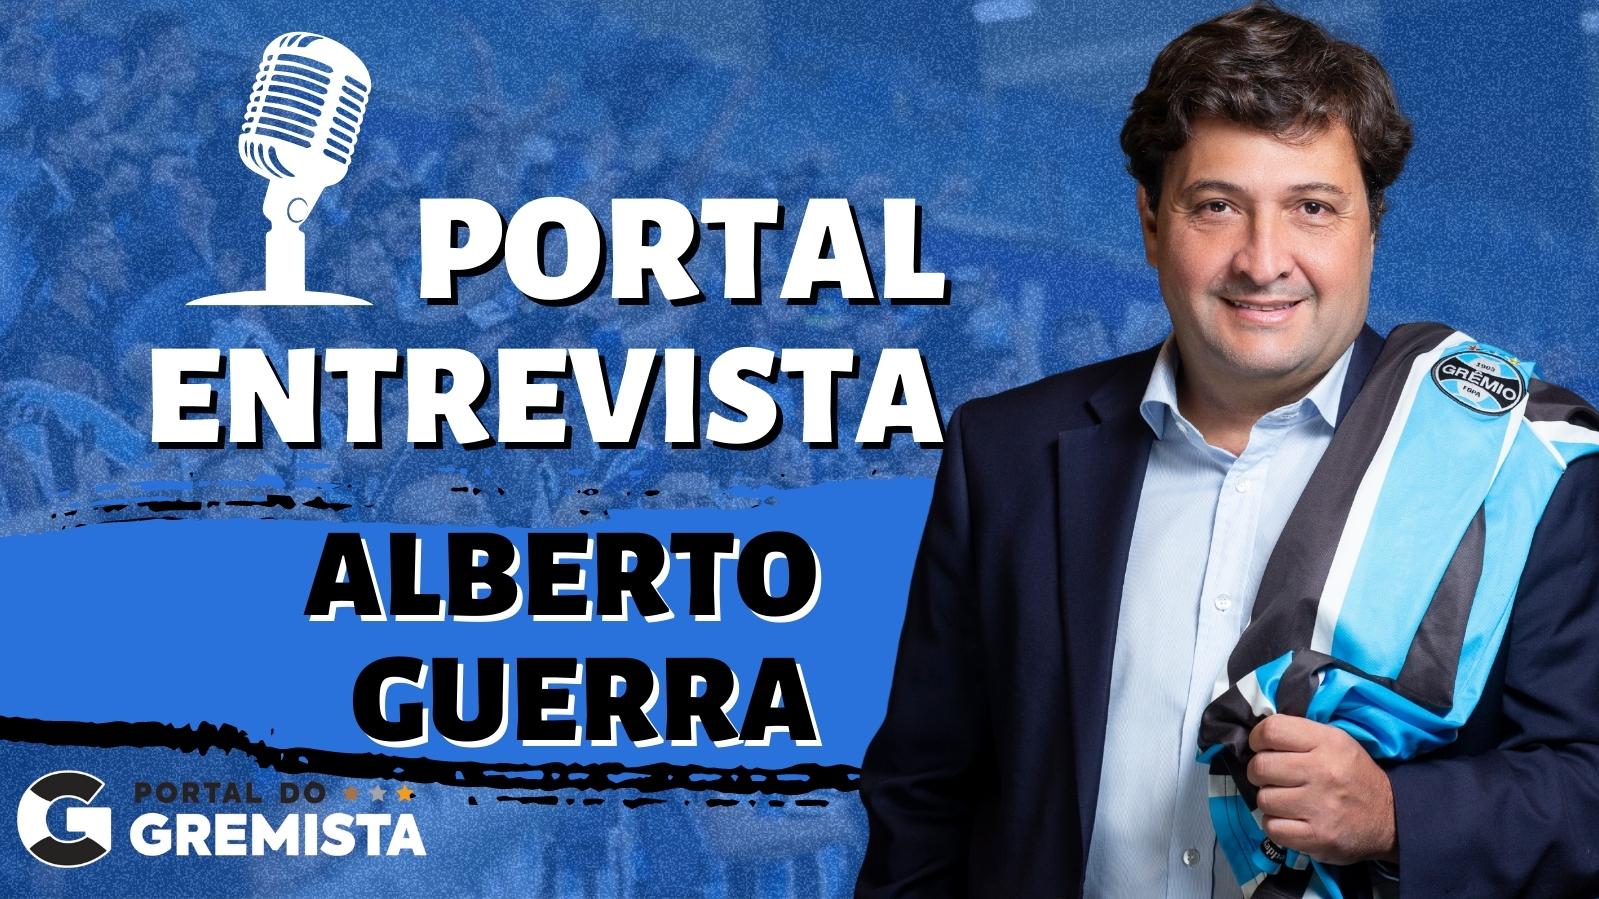 PORTAL ENTREVISTA Alberto Guerra